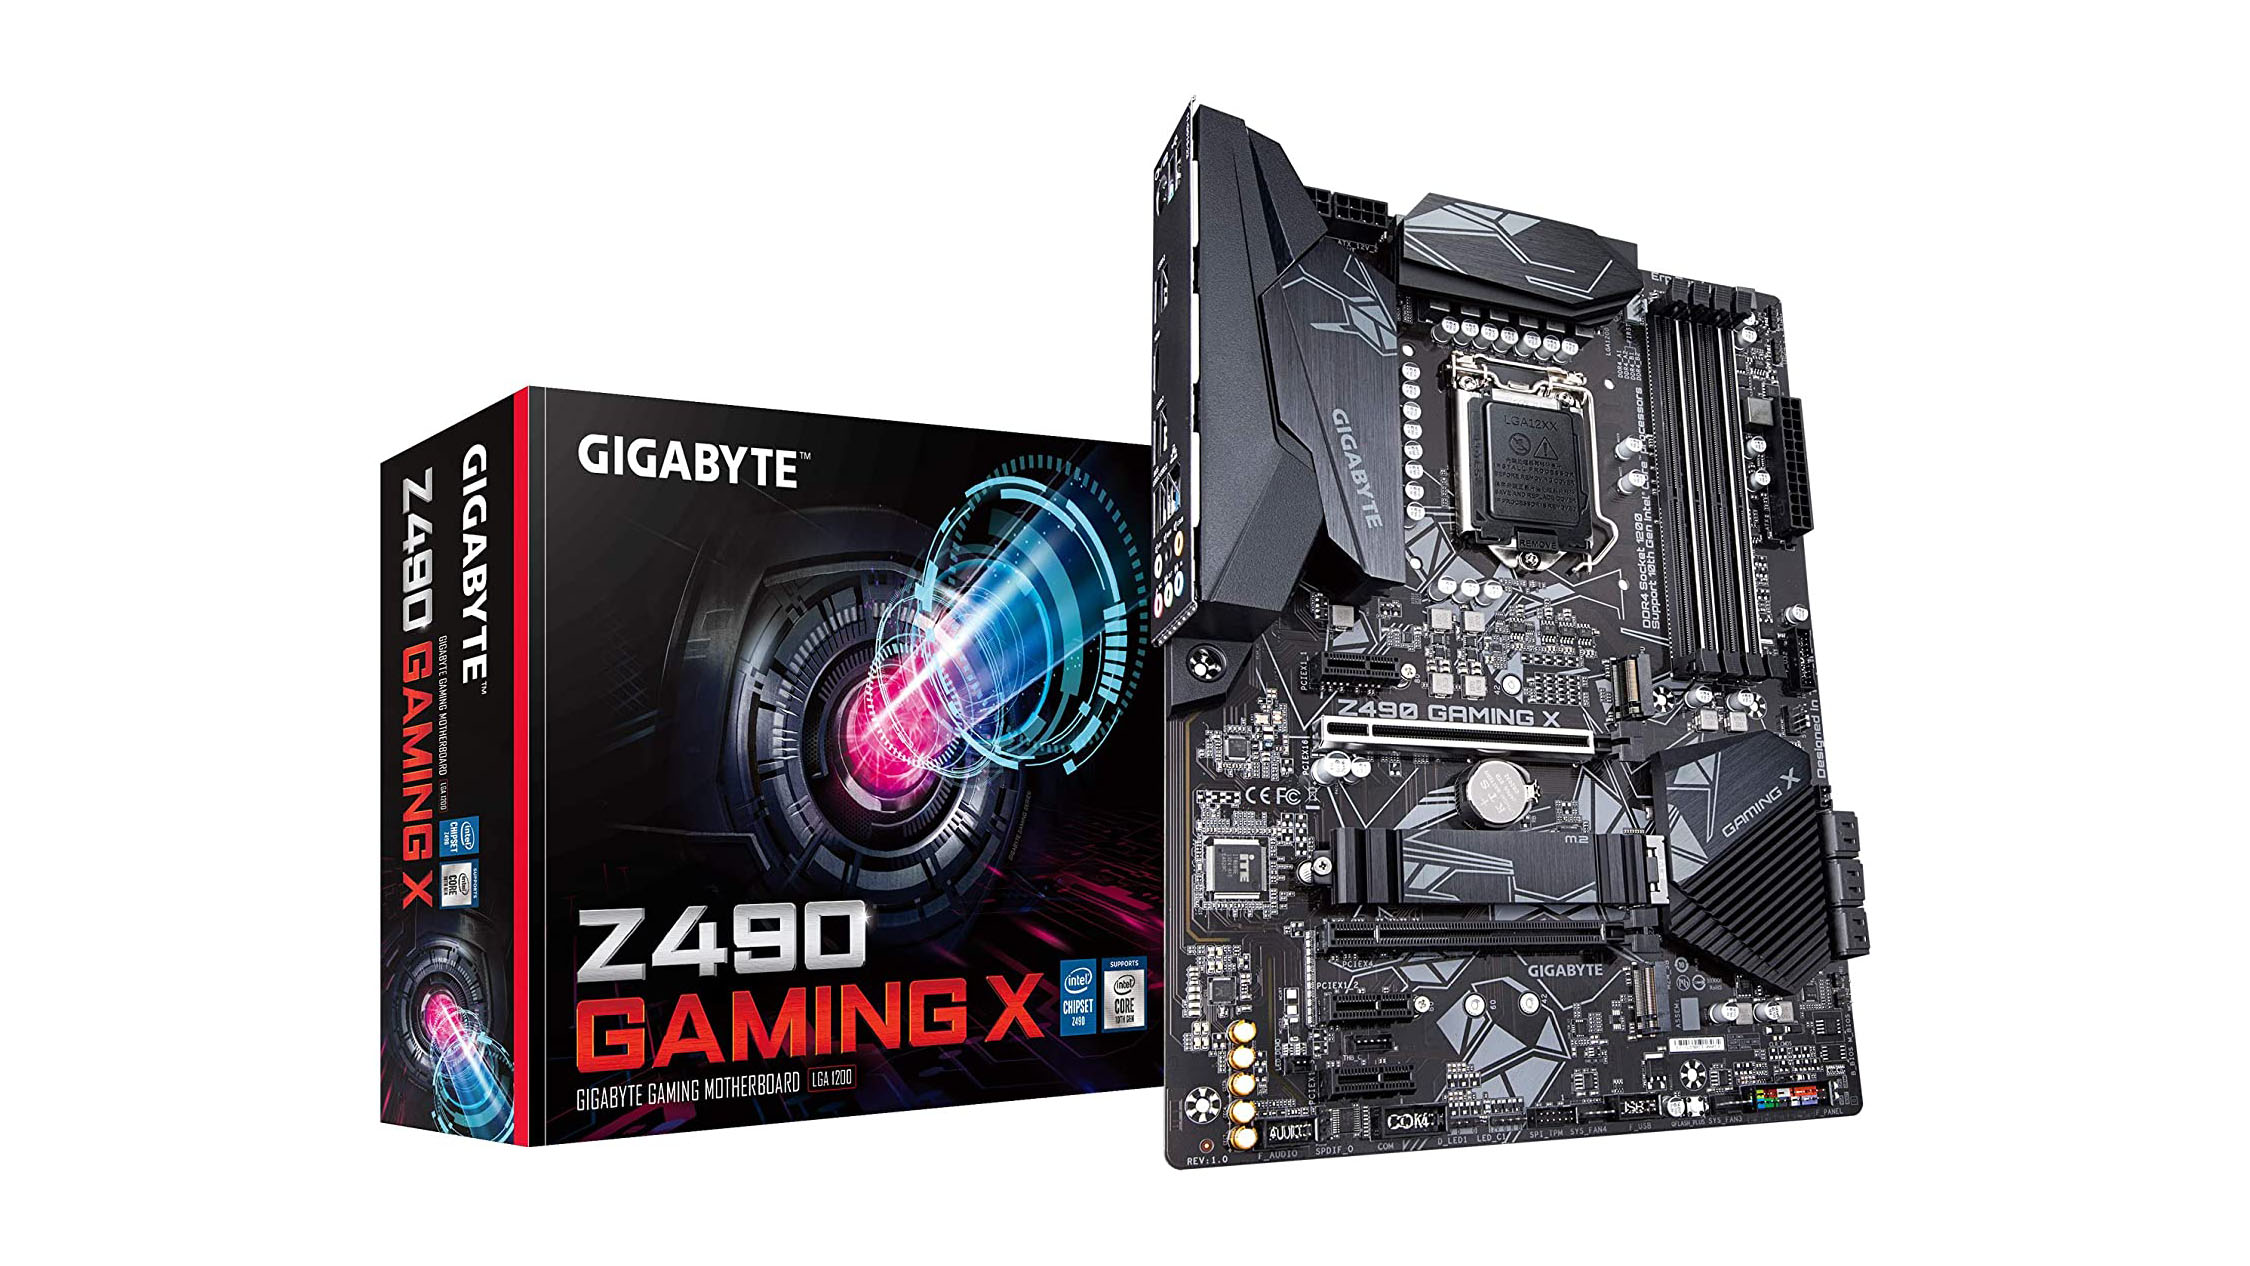 GIGABYTE Z490 Gaming X ເປັນທາງເລືອກທີ່ດີສໍາລັບພັດລົມ Intel ທີ່ຕ້ອງການເມນບອດໃຫມ່ໃນຂອບເຂດງົບປະມານ.